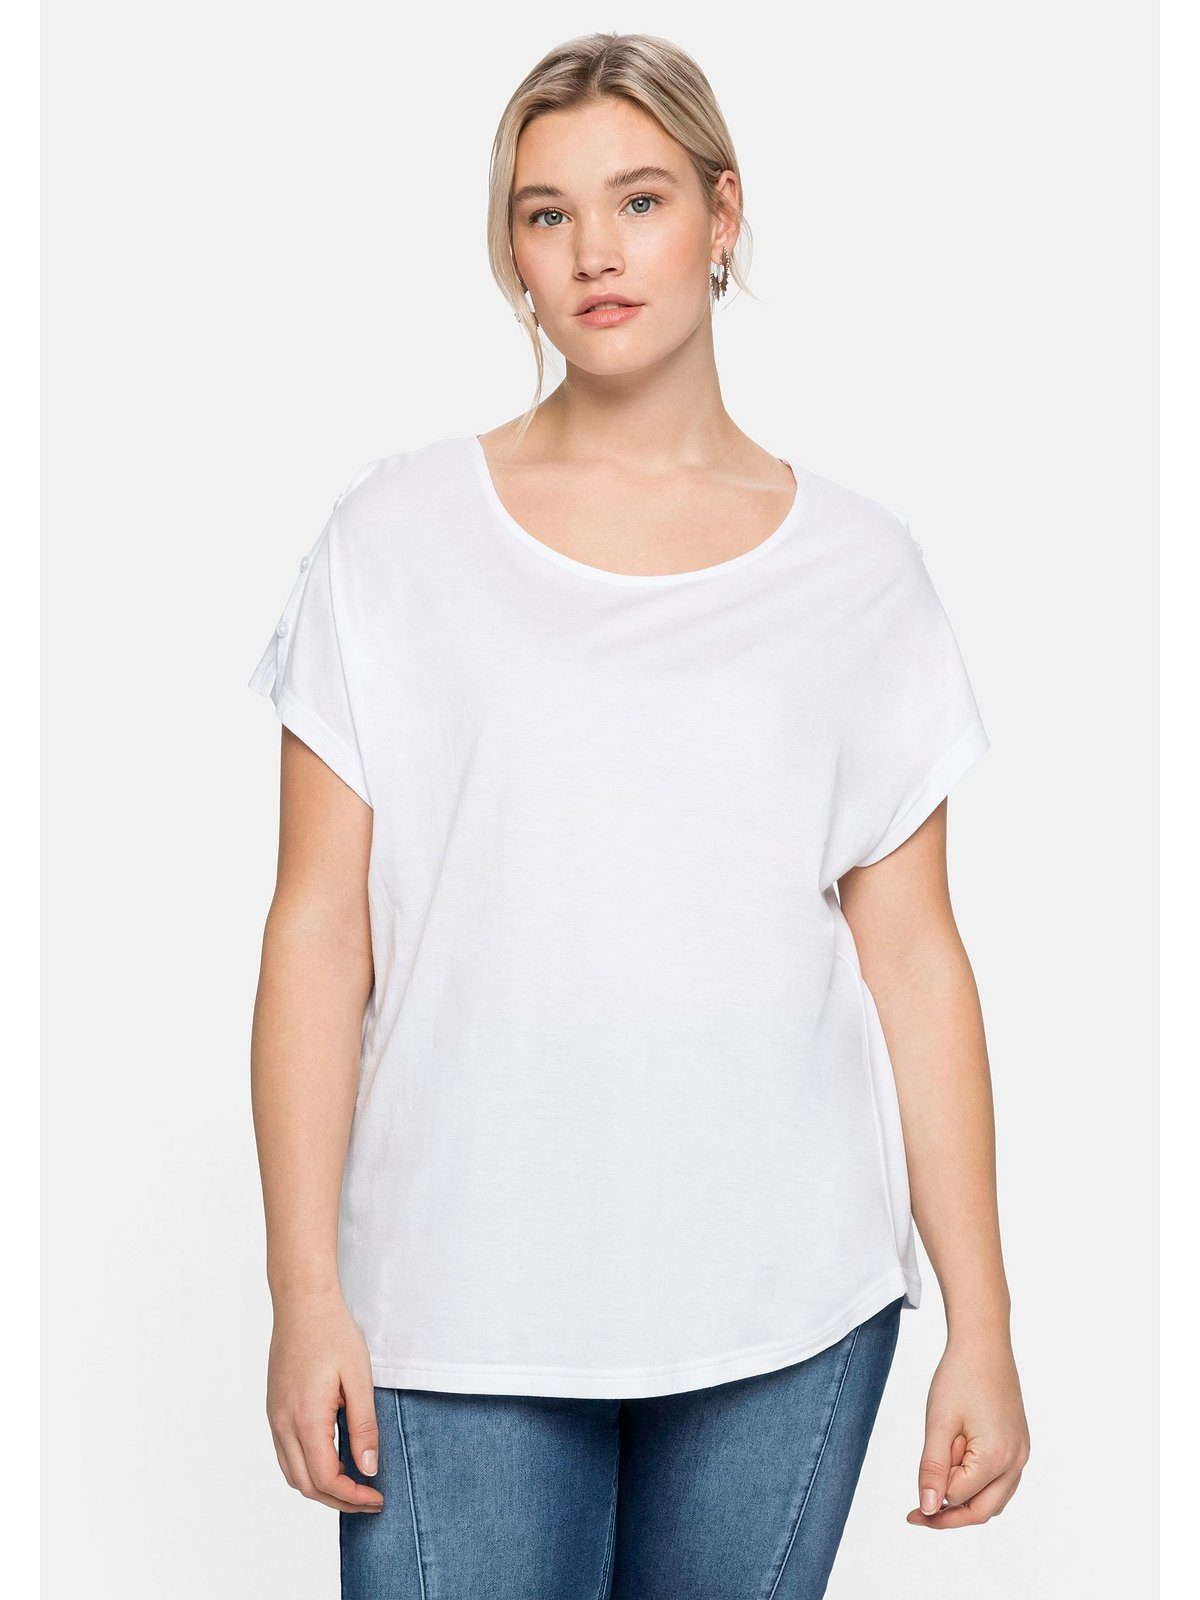 T-Shirt mit Größen A-Linie Große in leichter Schulterpartie, Sheego offener weiß